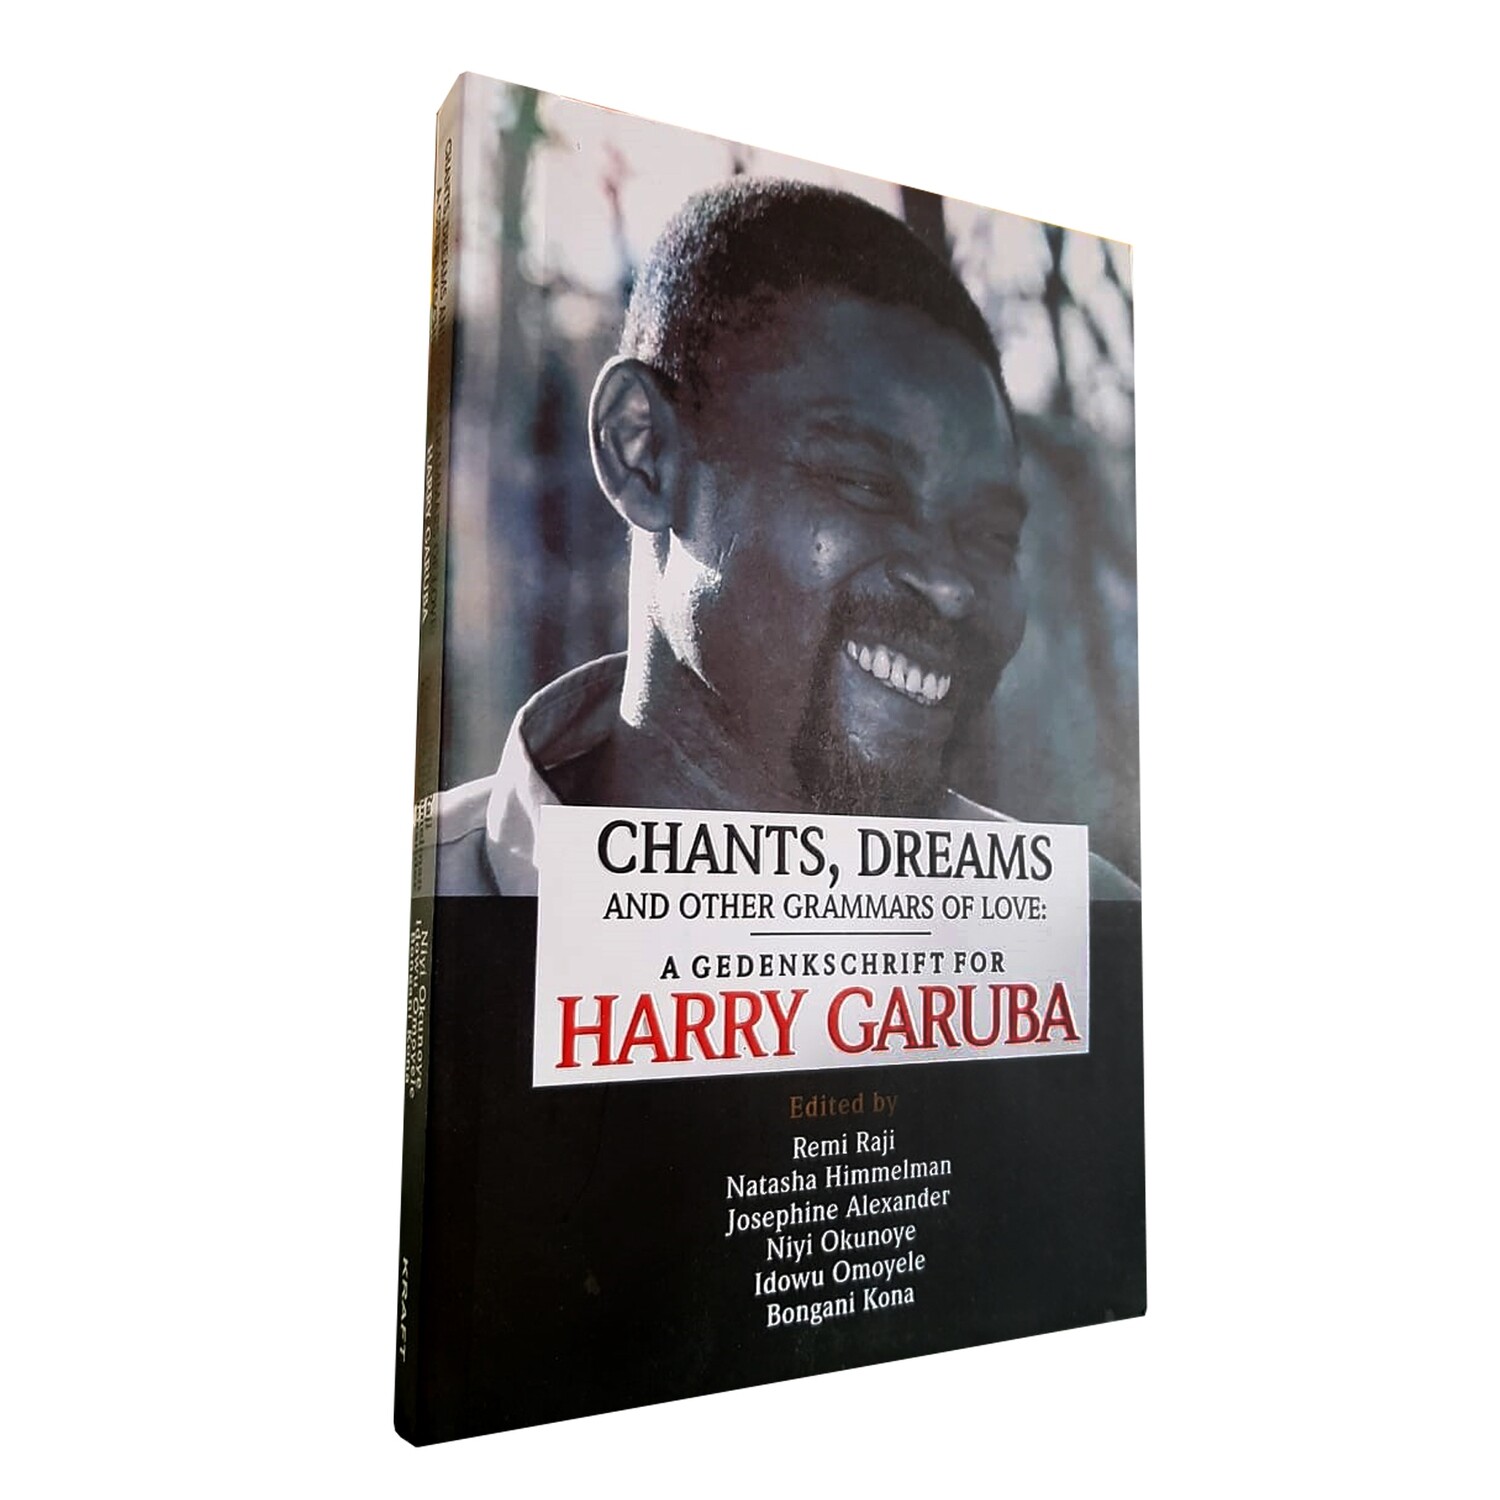 Chants, Dreams and Other Grammars of Love: a gedenkschrift for Harry Garuba (Kraft Books Limited, 2022)